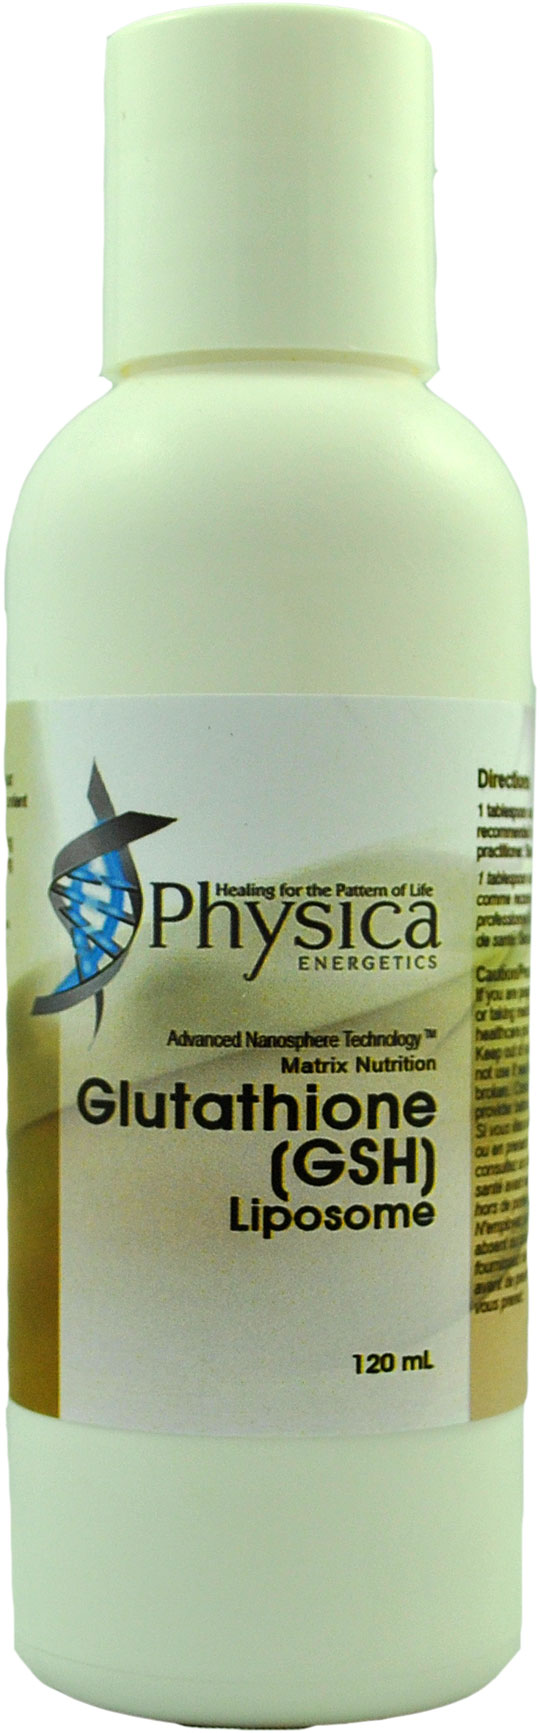 Glutathione GSH Liposome